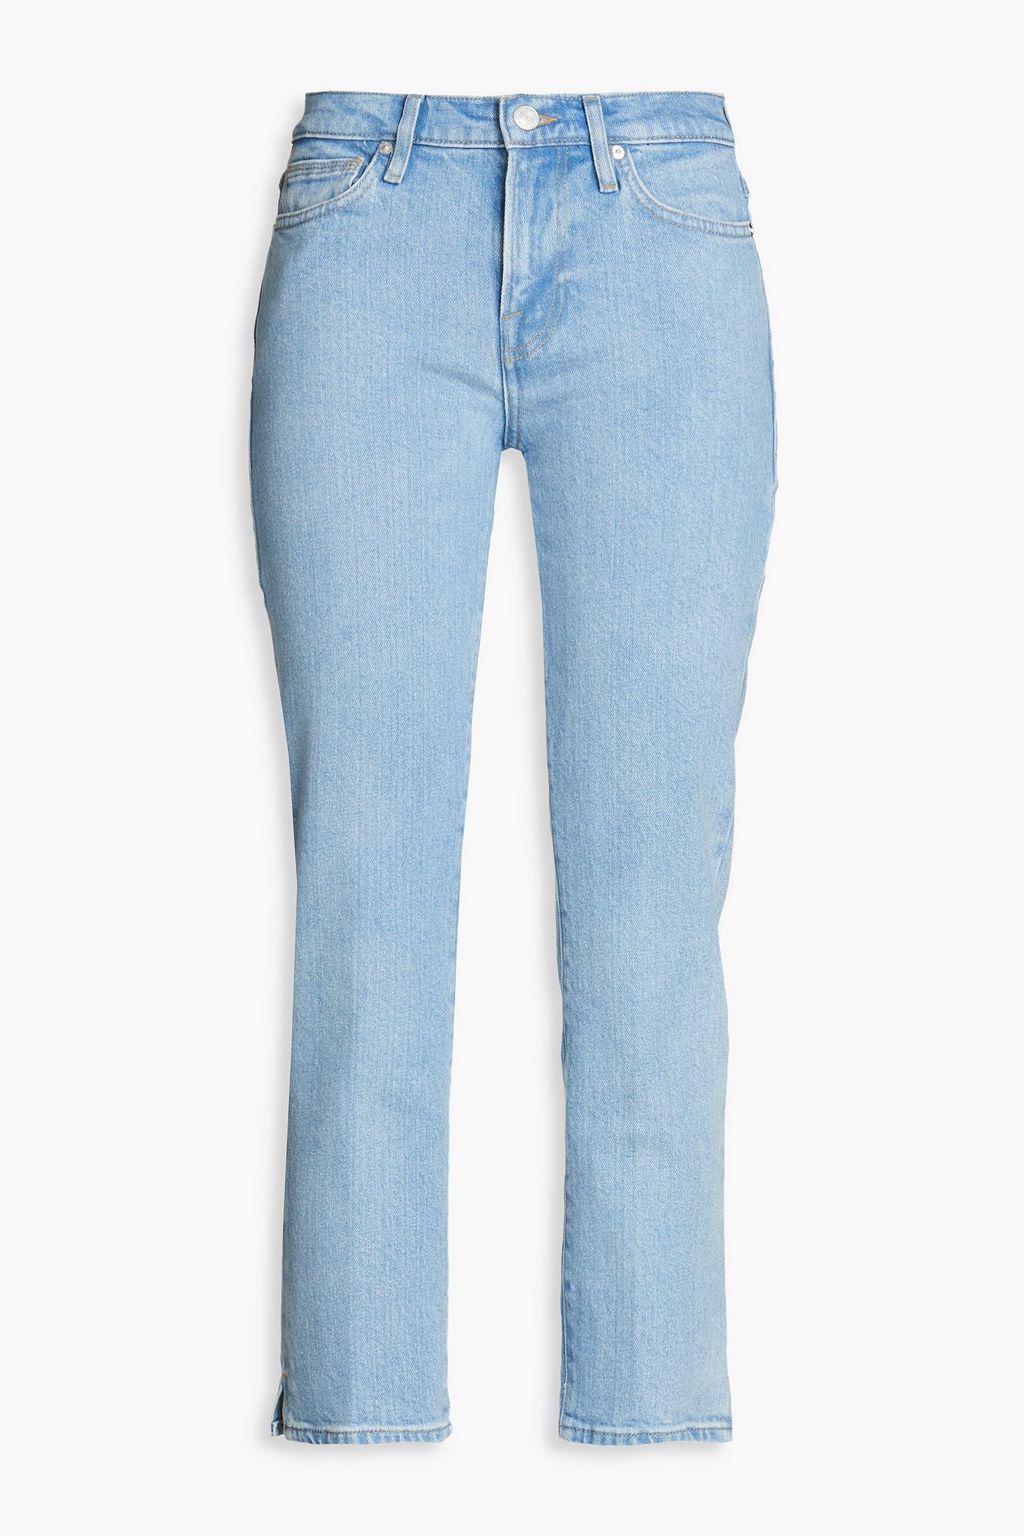 Укороченные прямые джинсы Le High с высокой посадкой FRAME, синий джинсы укороченные широкие frame le palazzo с высокой посадкой kerry